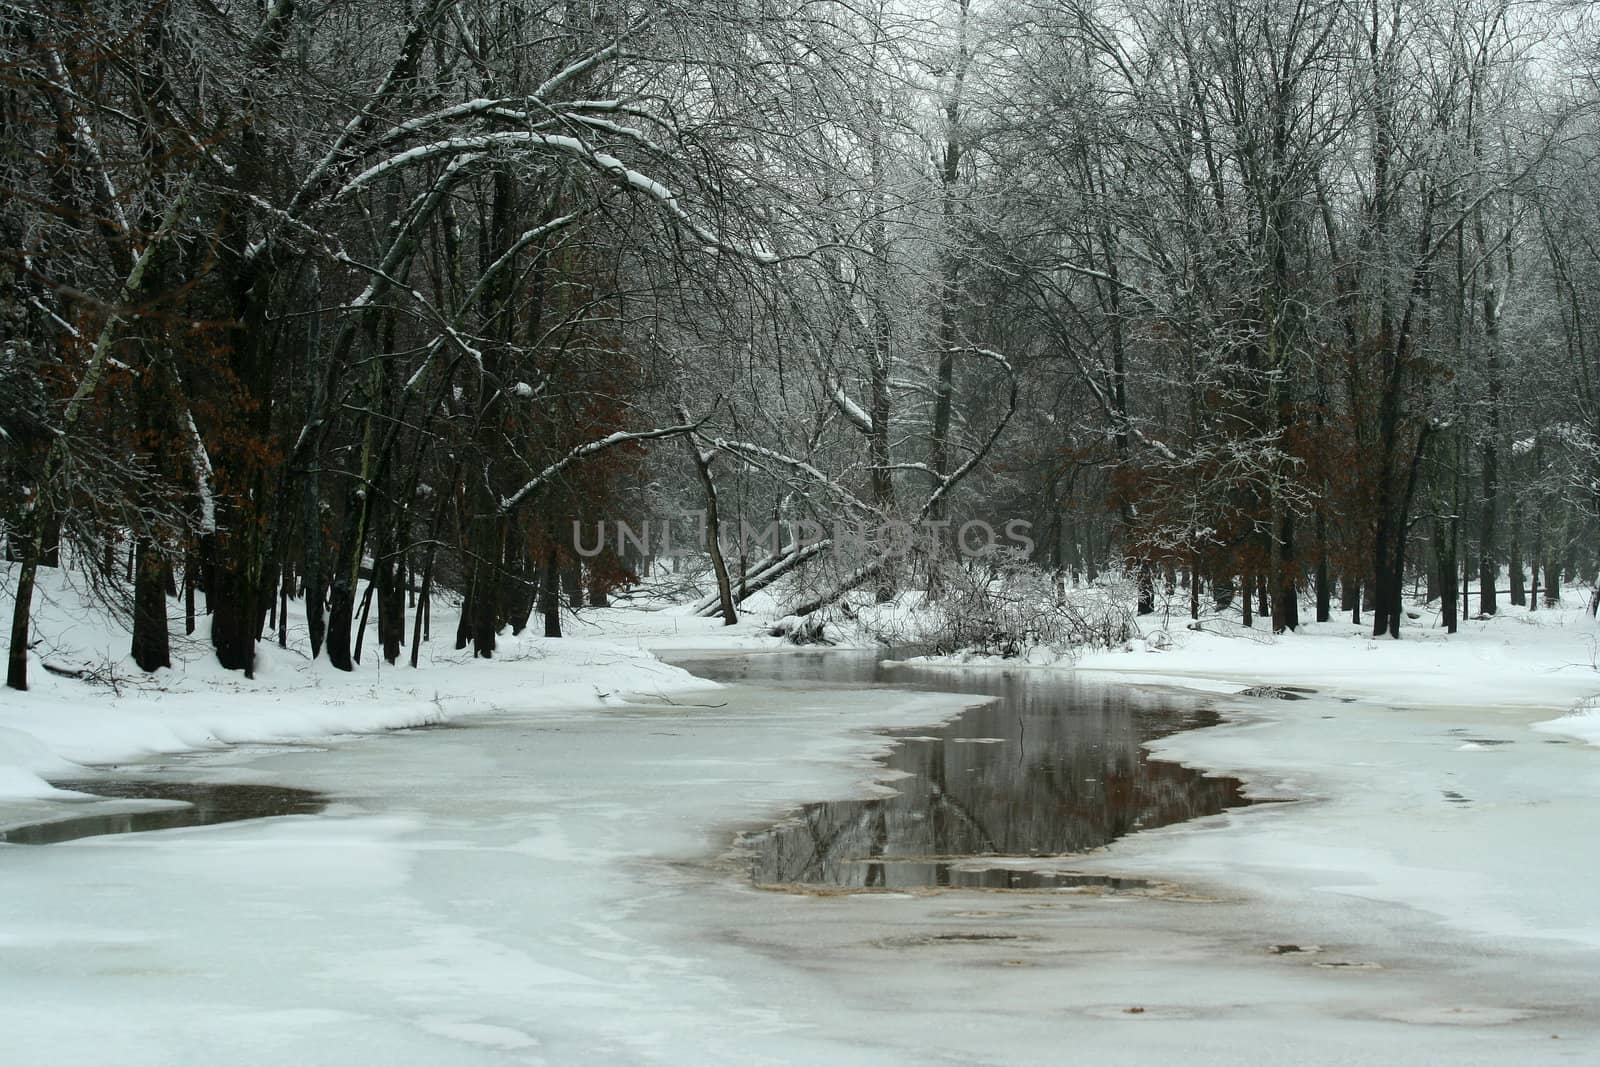 A Frozen pond in winter